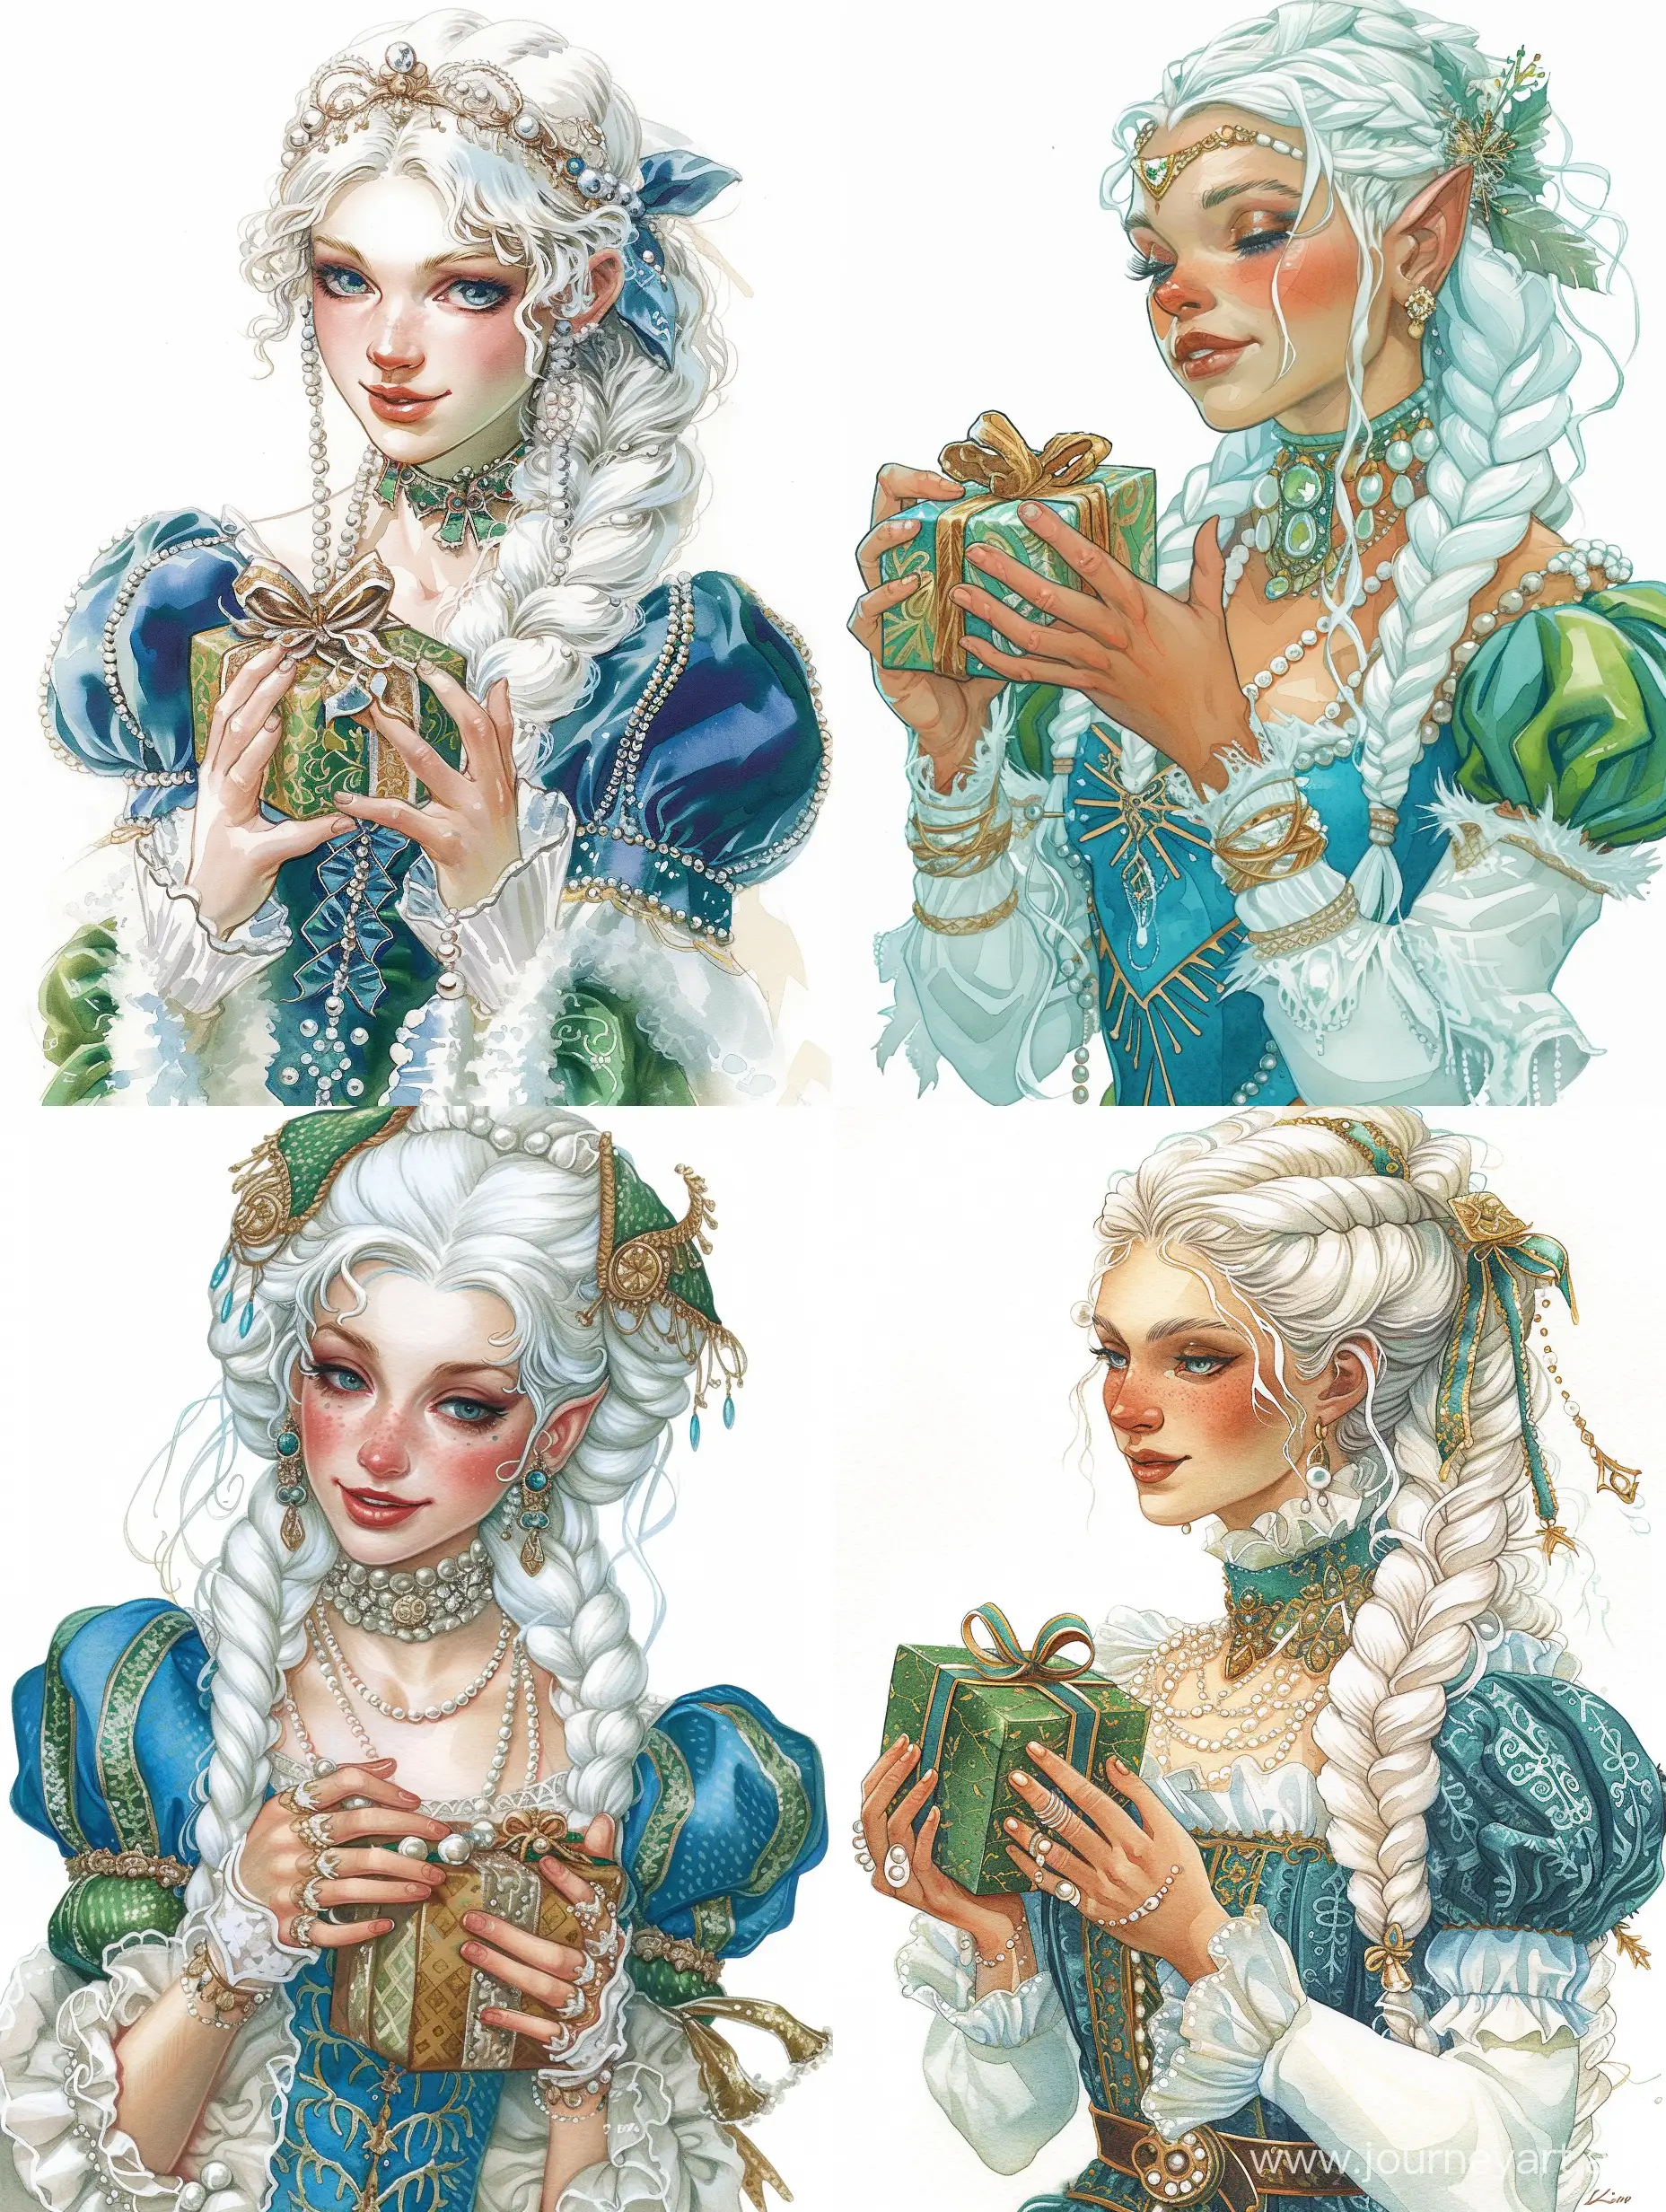 снегурочка, очень красивая, милая, белые косы, жемчуга, голубой и зеленый цвет в нарядах, держит в руках подарок, Красивые руки, рисунок, эстетика праздника, винтаж, акварель, динамичная поза